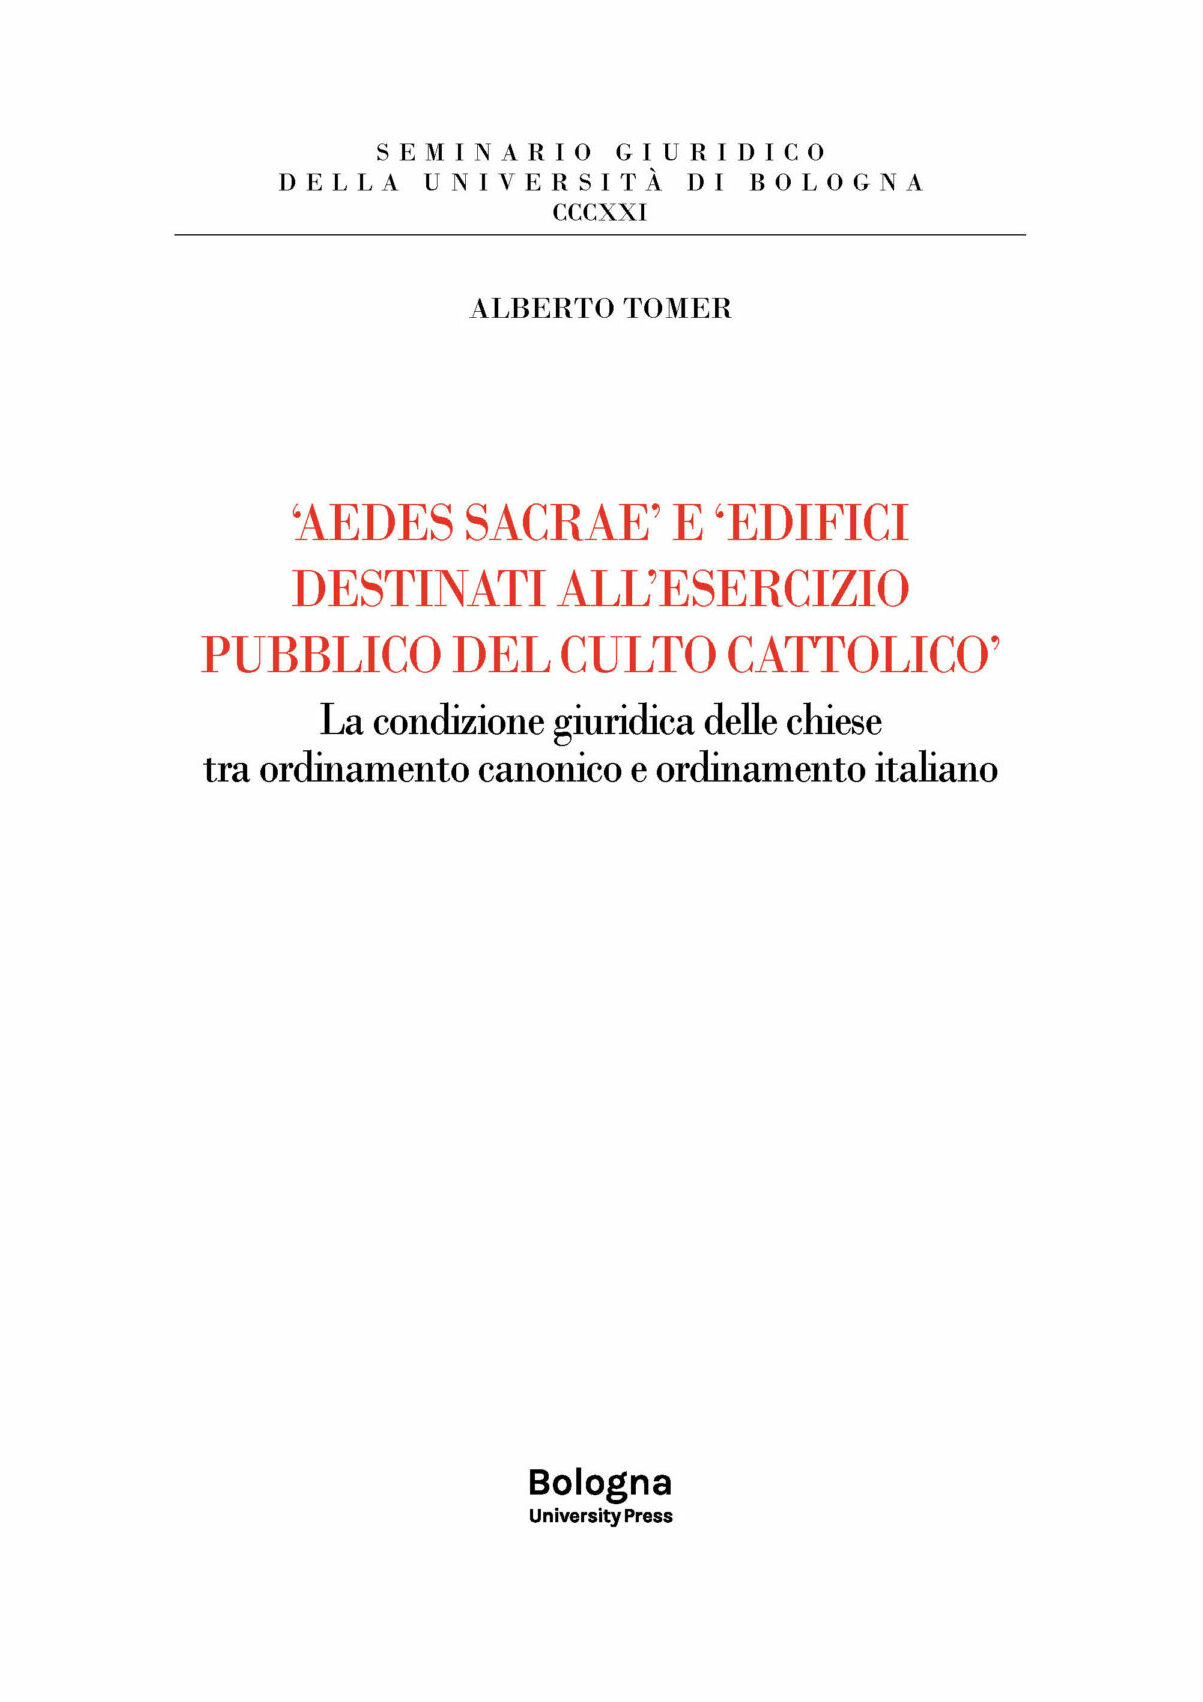 ‘AEDES SACRAE’ E ‘EDIFICI DESTINATI ALL’ESERCIZIO PUBBLICO DEL CULTO CATTOLICO’ - Bologna University Press